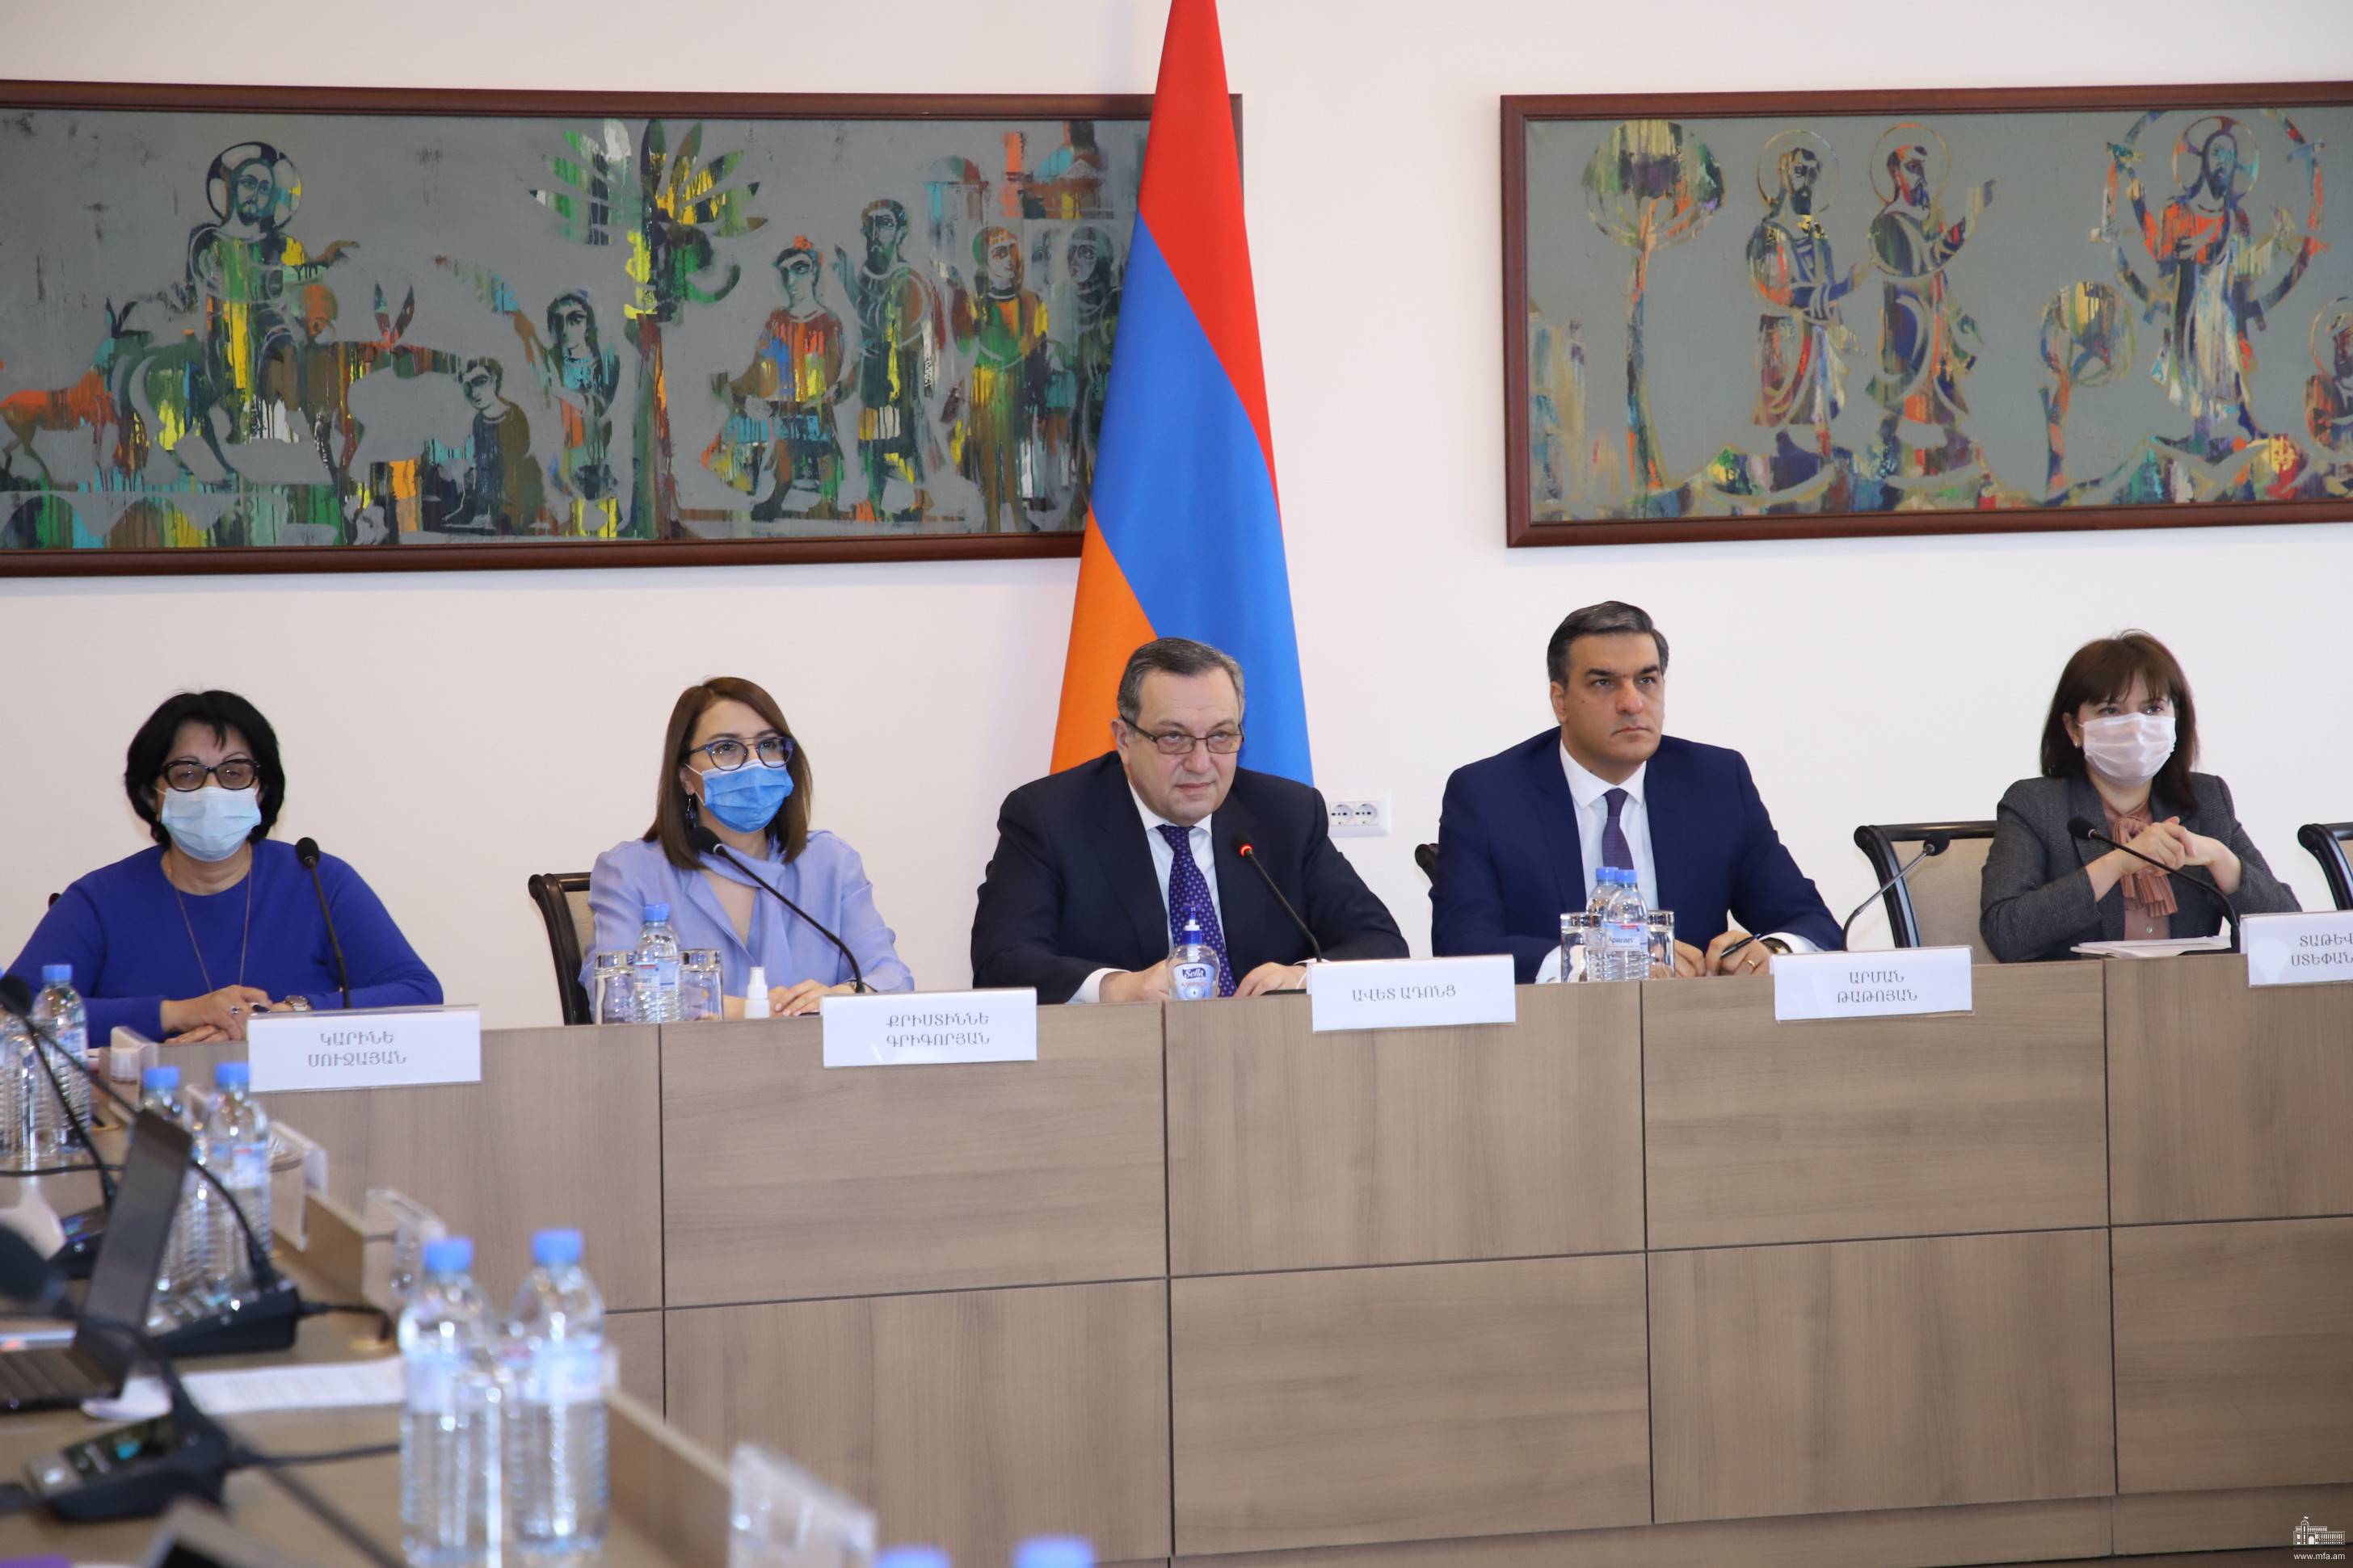 Մարդու իրավունքների շուրջ ՀՀ-ԵՄ երկխոսության նիստին ներկայացվել է հայ գերիների հարցը